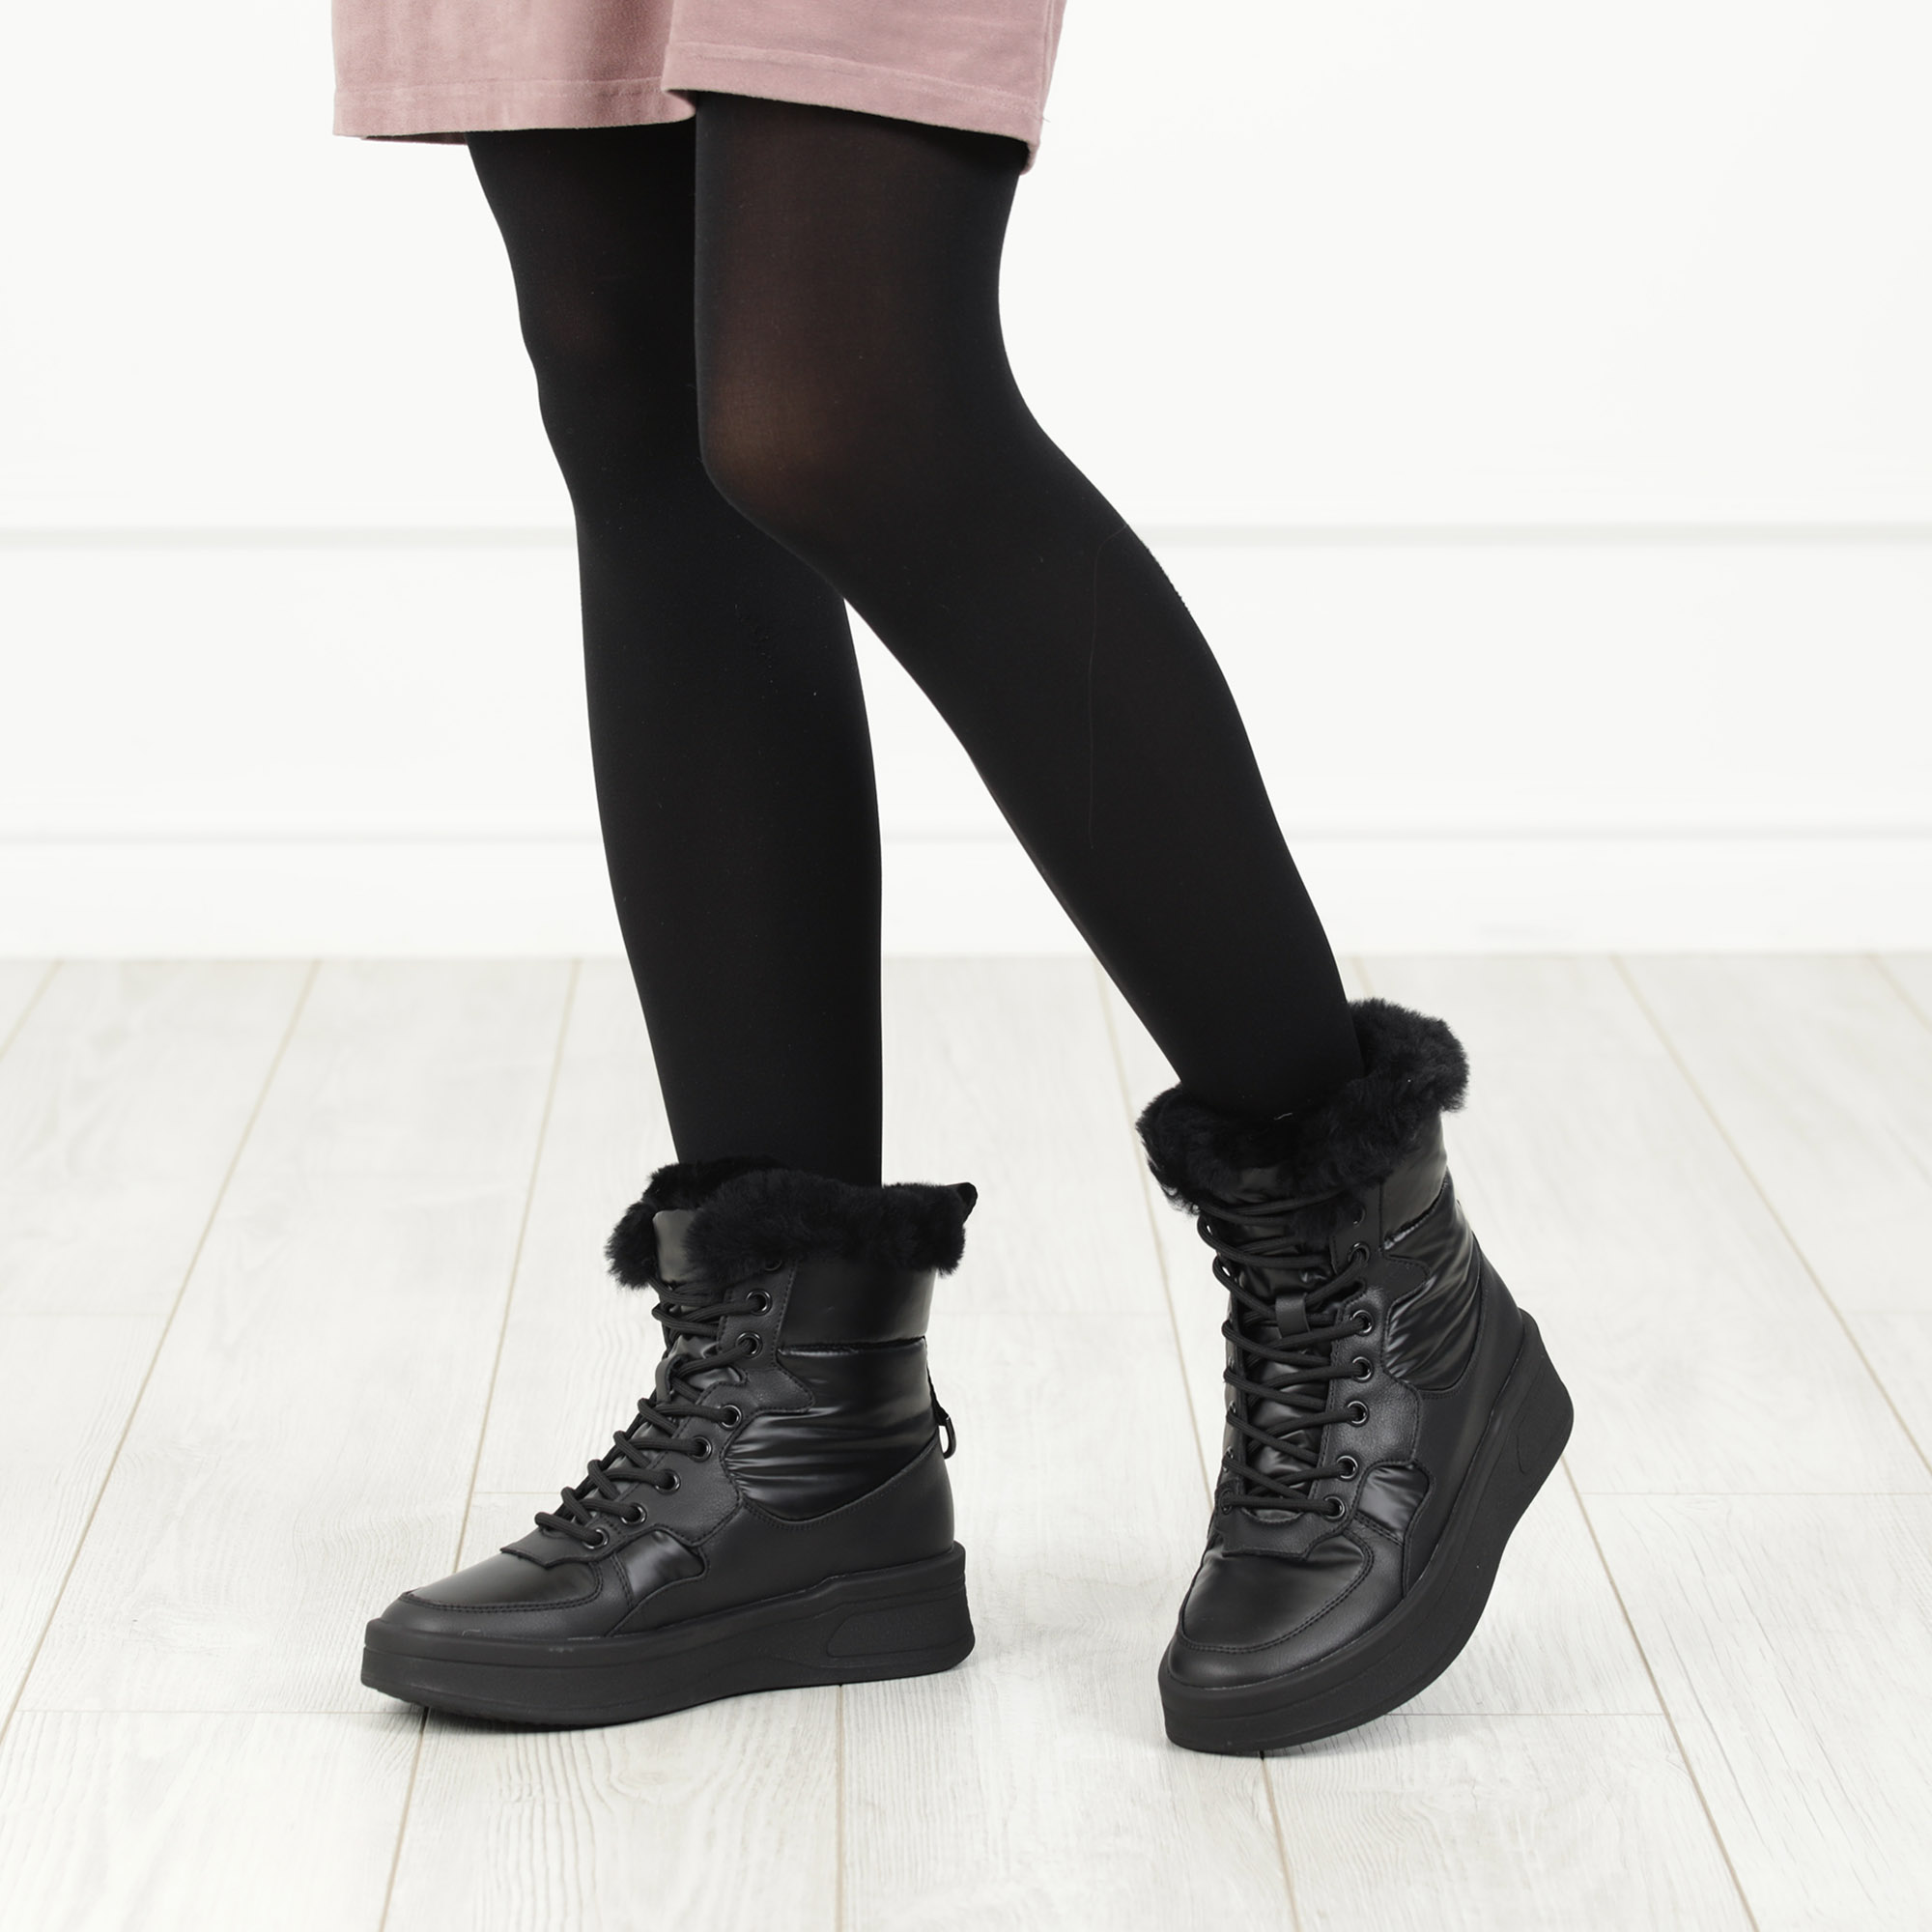 Черные высокие кроссовки из комбинированных материалов смеховой опушкой на подкладке из натуральной шерсти на утолщенной платформе Respect, размер 36, цвет черный - фото 2